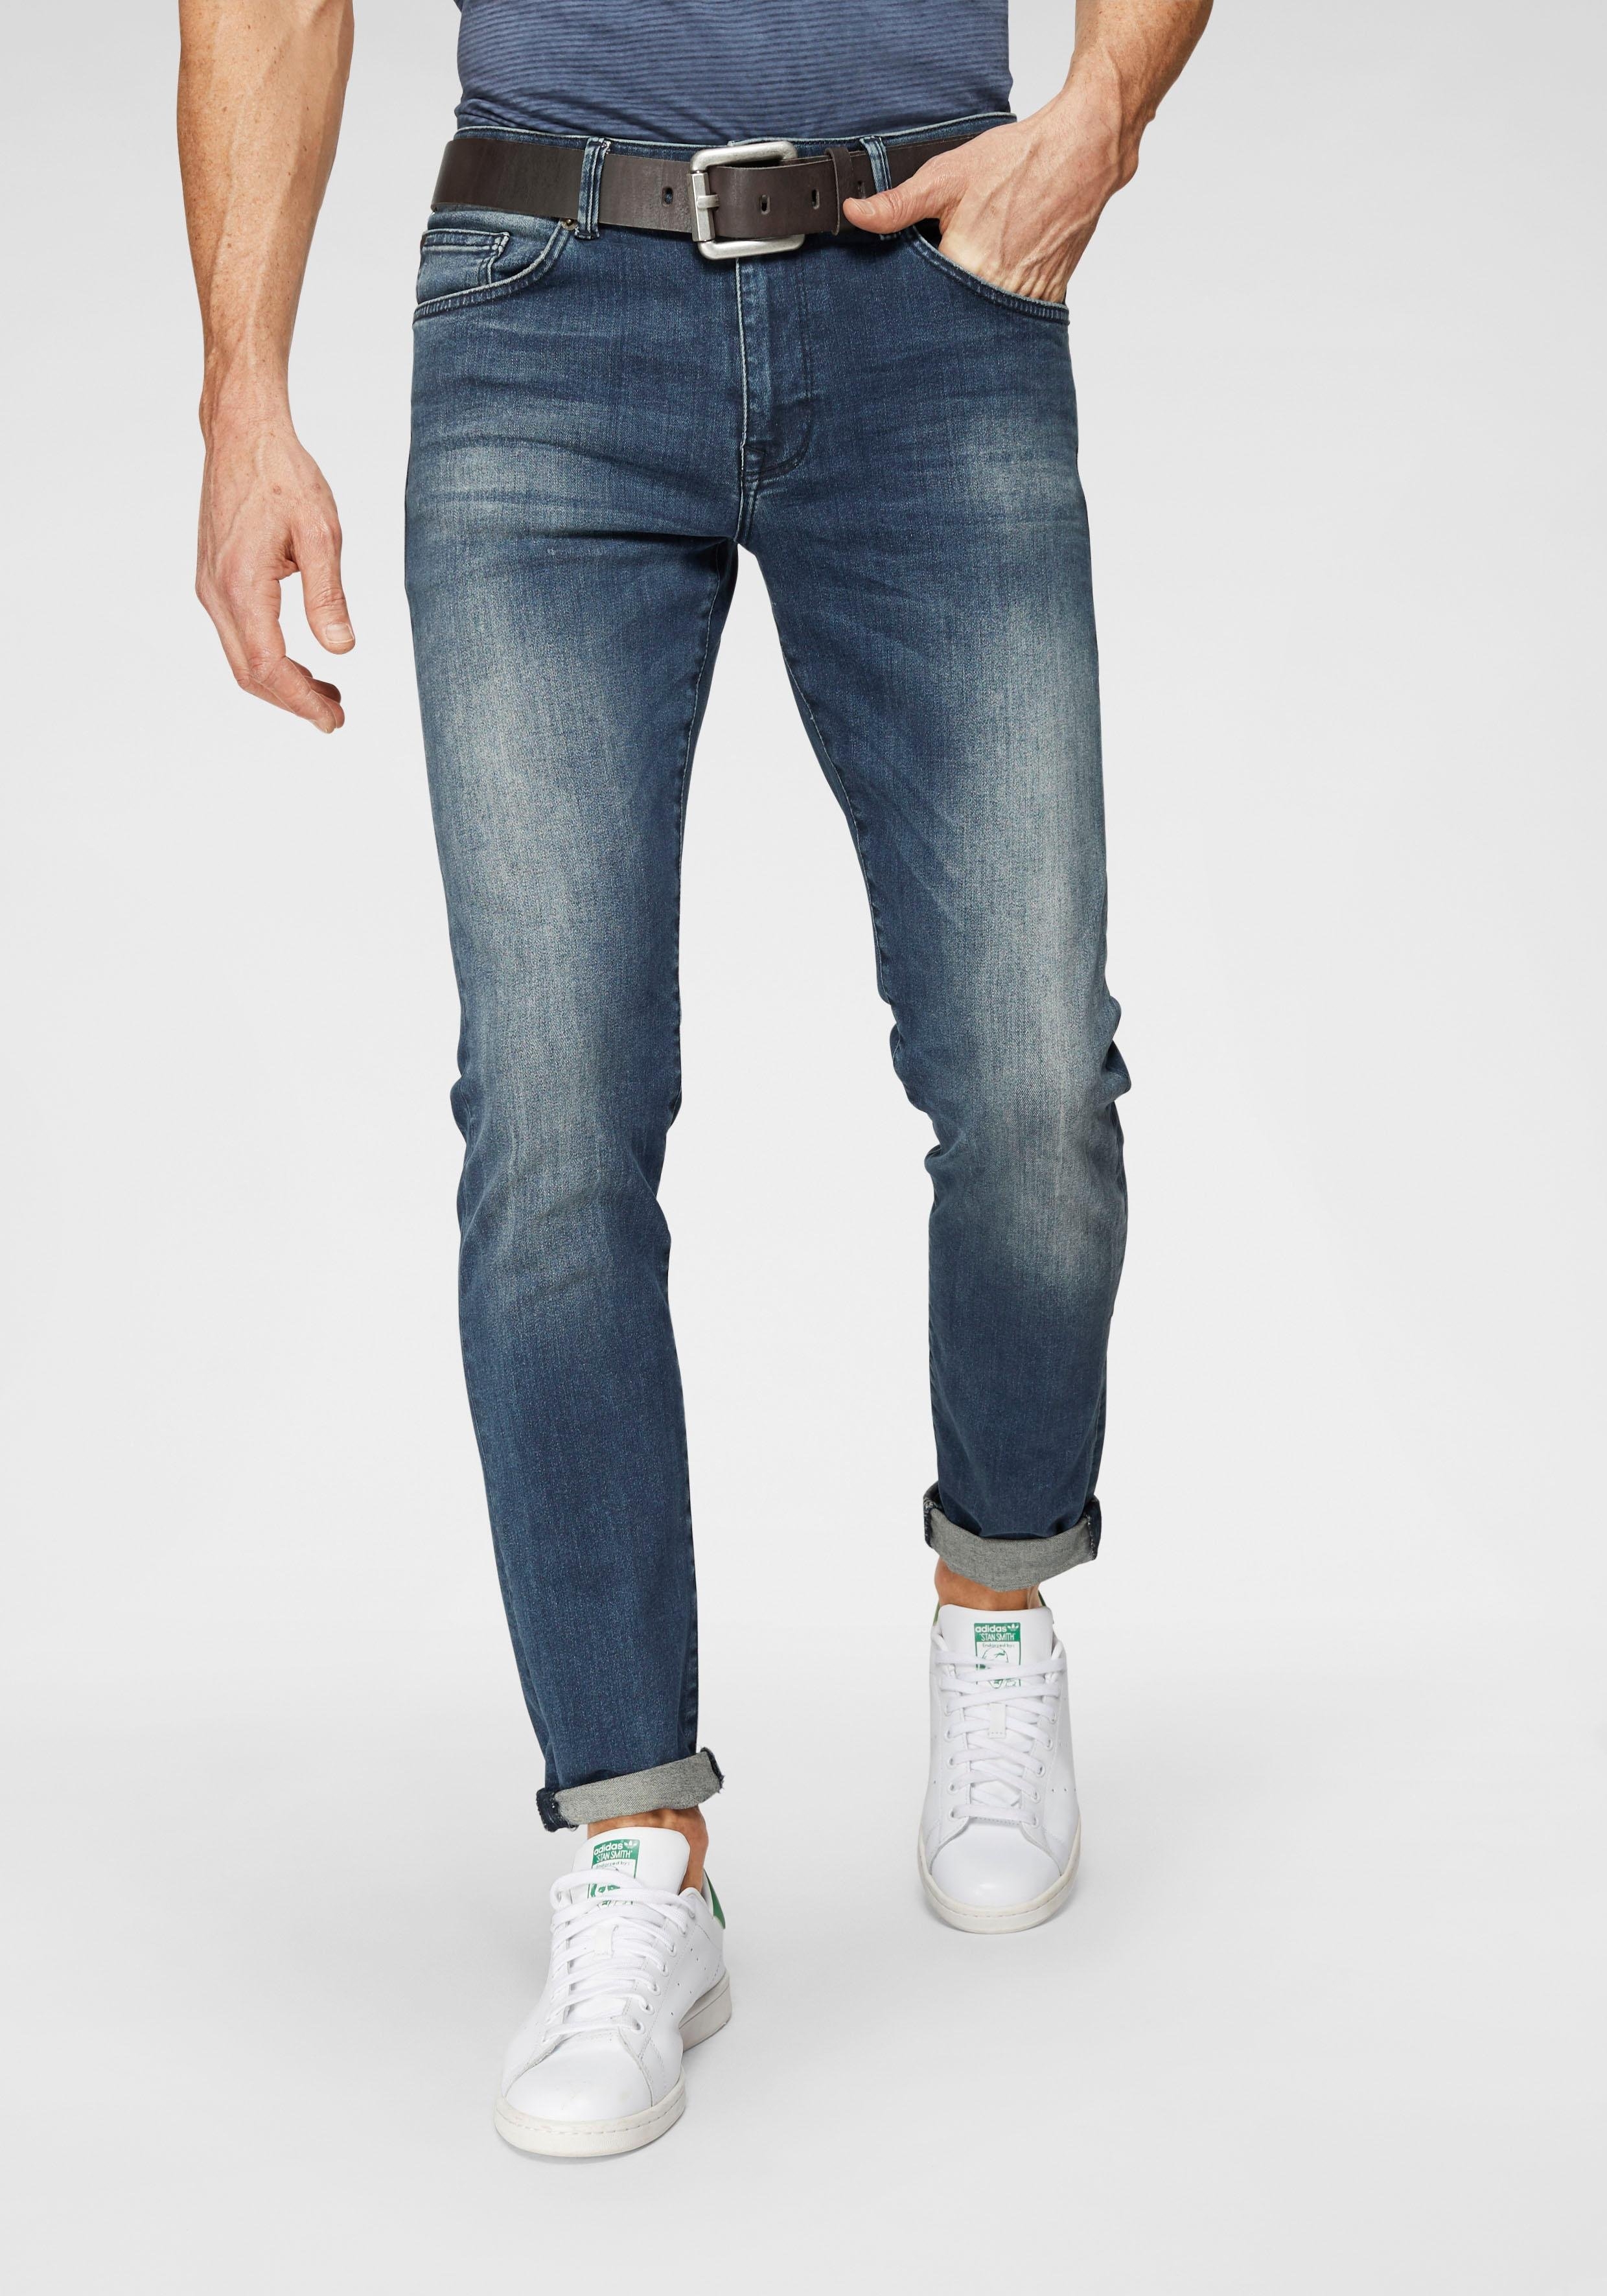 analyseren Haan impliciet Petrol Industries Slim fit jeans Seaham in de online shop | OTTO